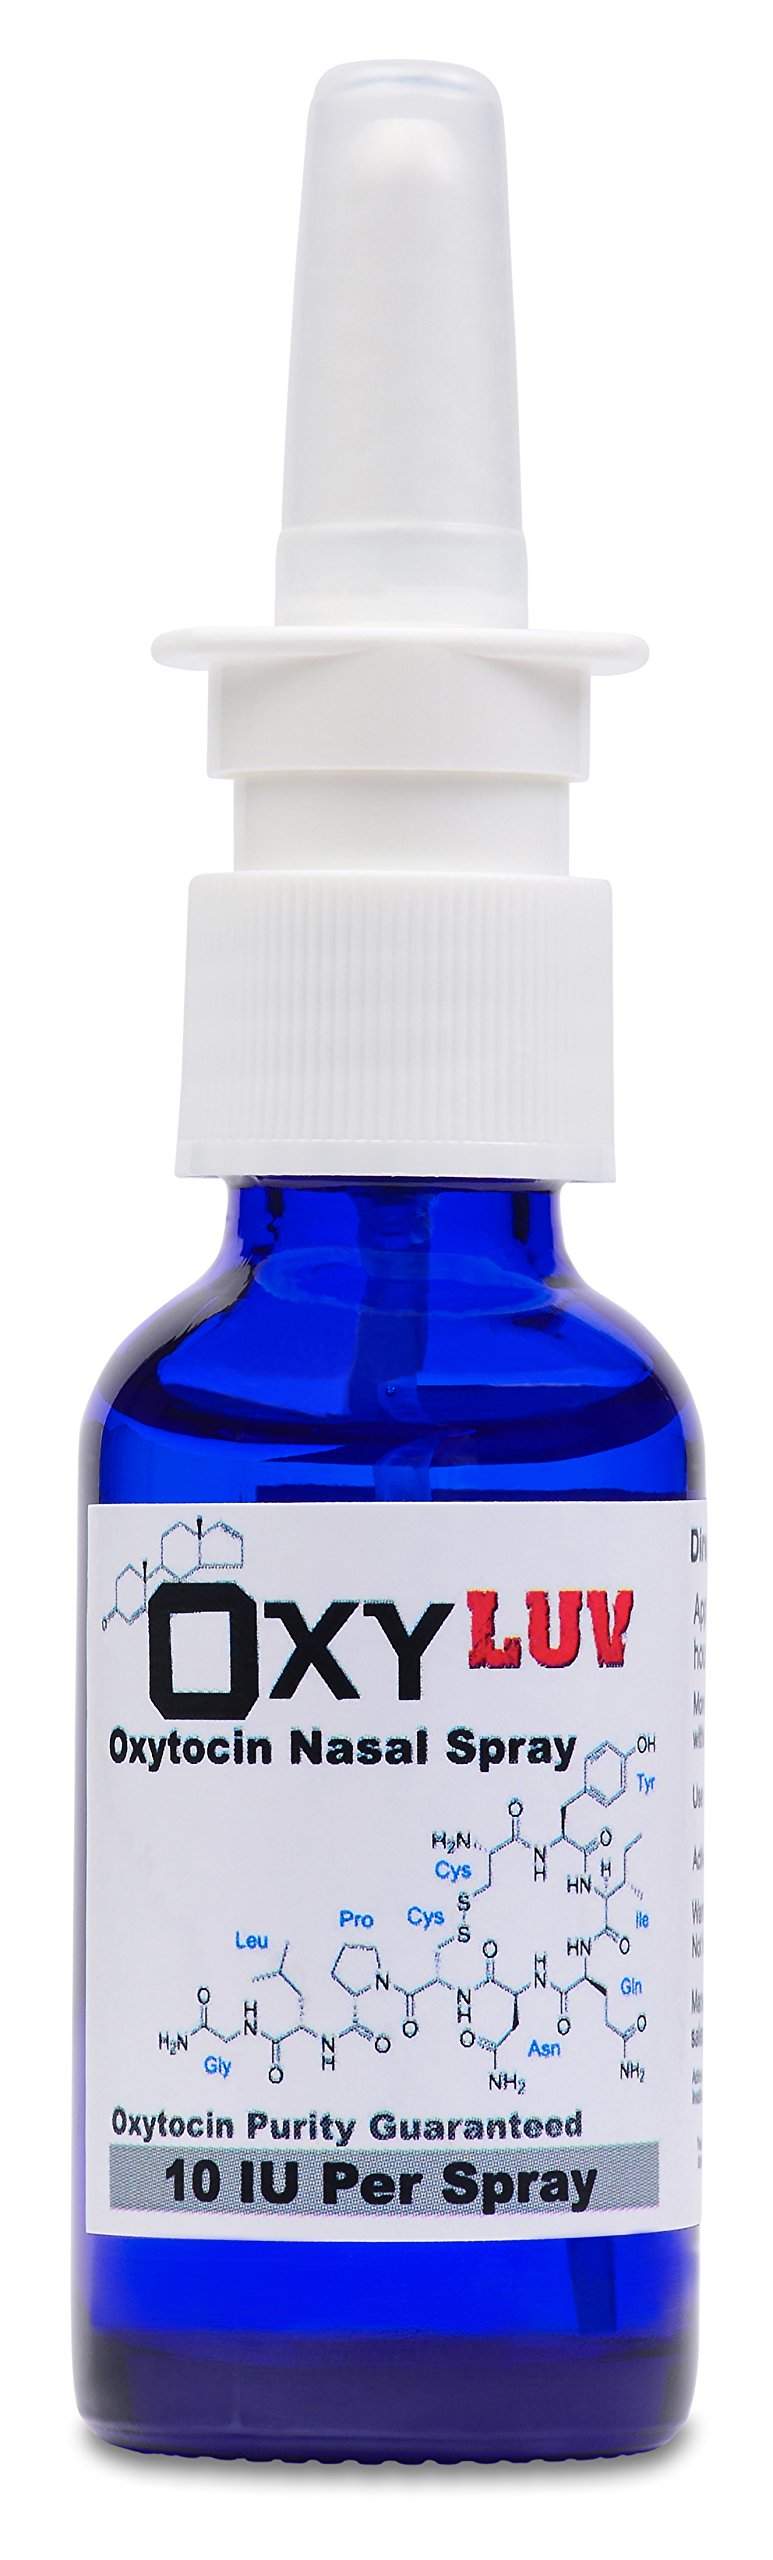 Rezept ohne oxytocin nasenspray oxytocin nasenspray